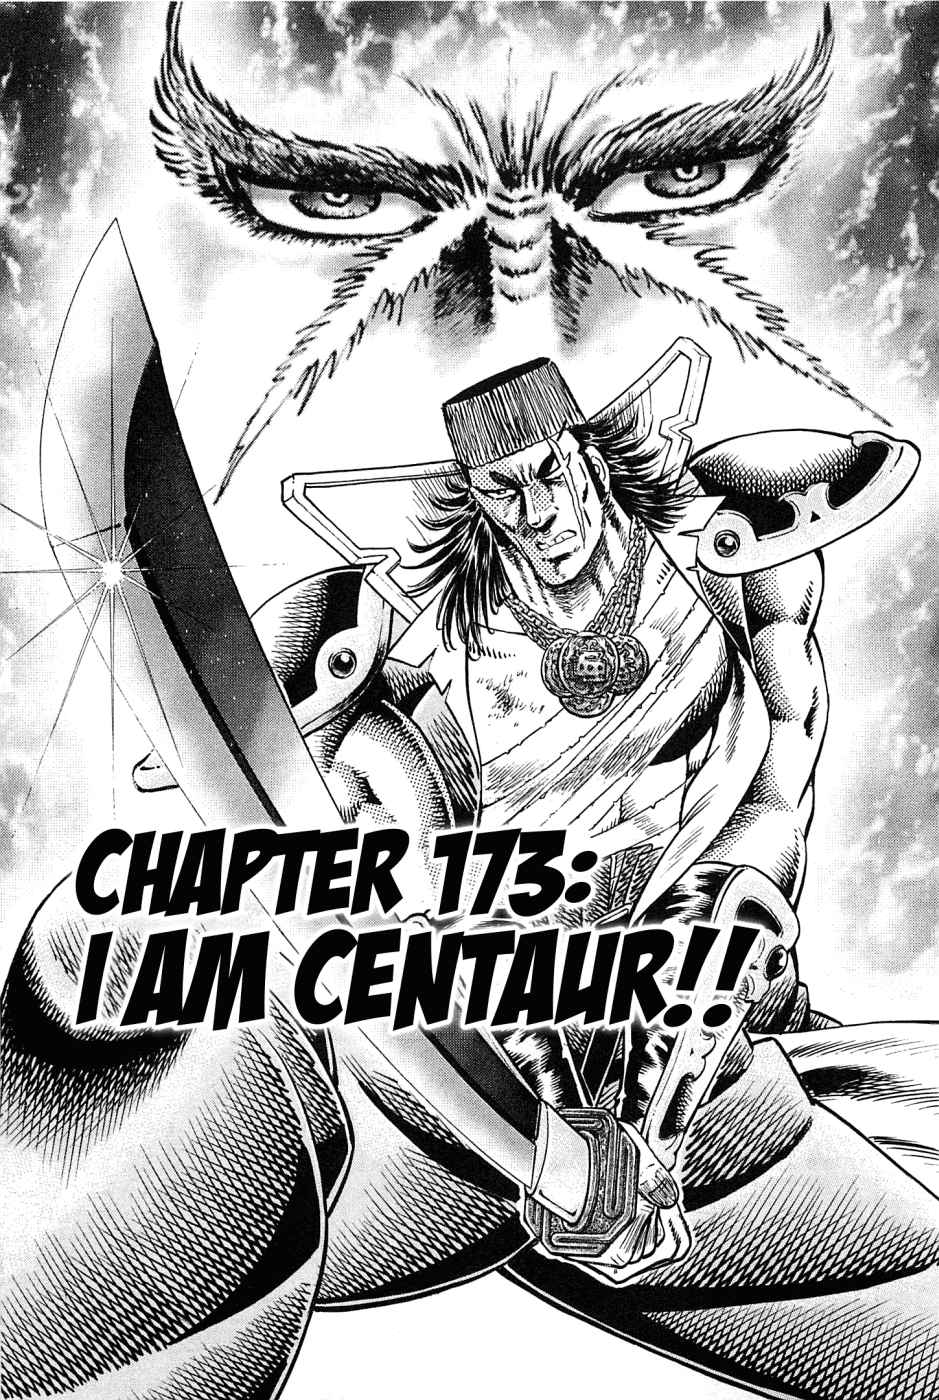 Akatsuki!! Otokojuku Seinen yo, Taishi wo Idake Vol. 22 Ch. 173 I am Centaur!!